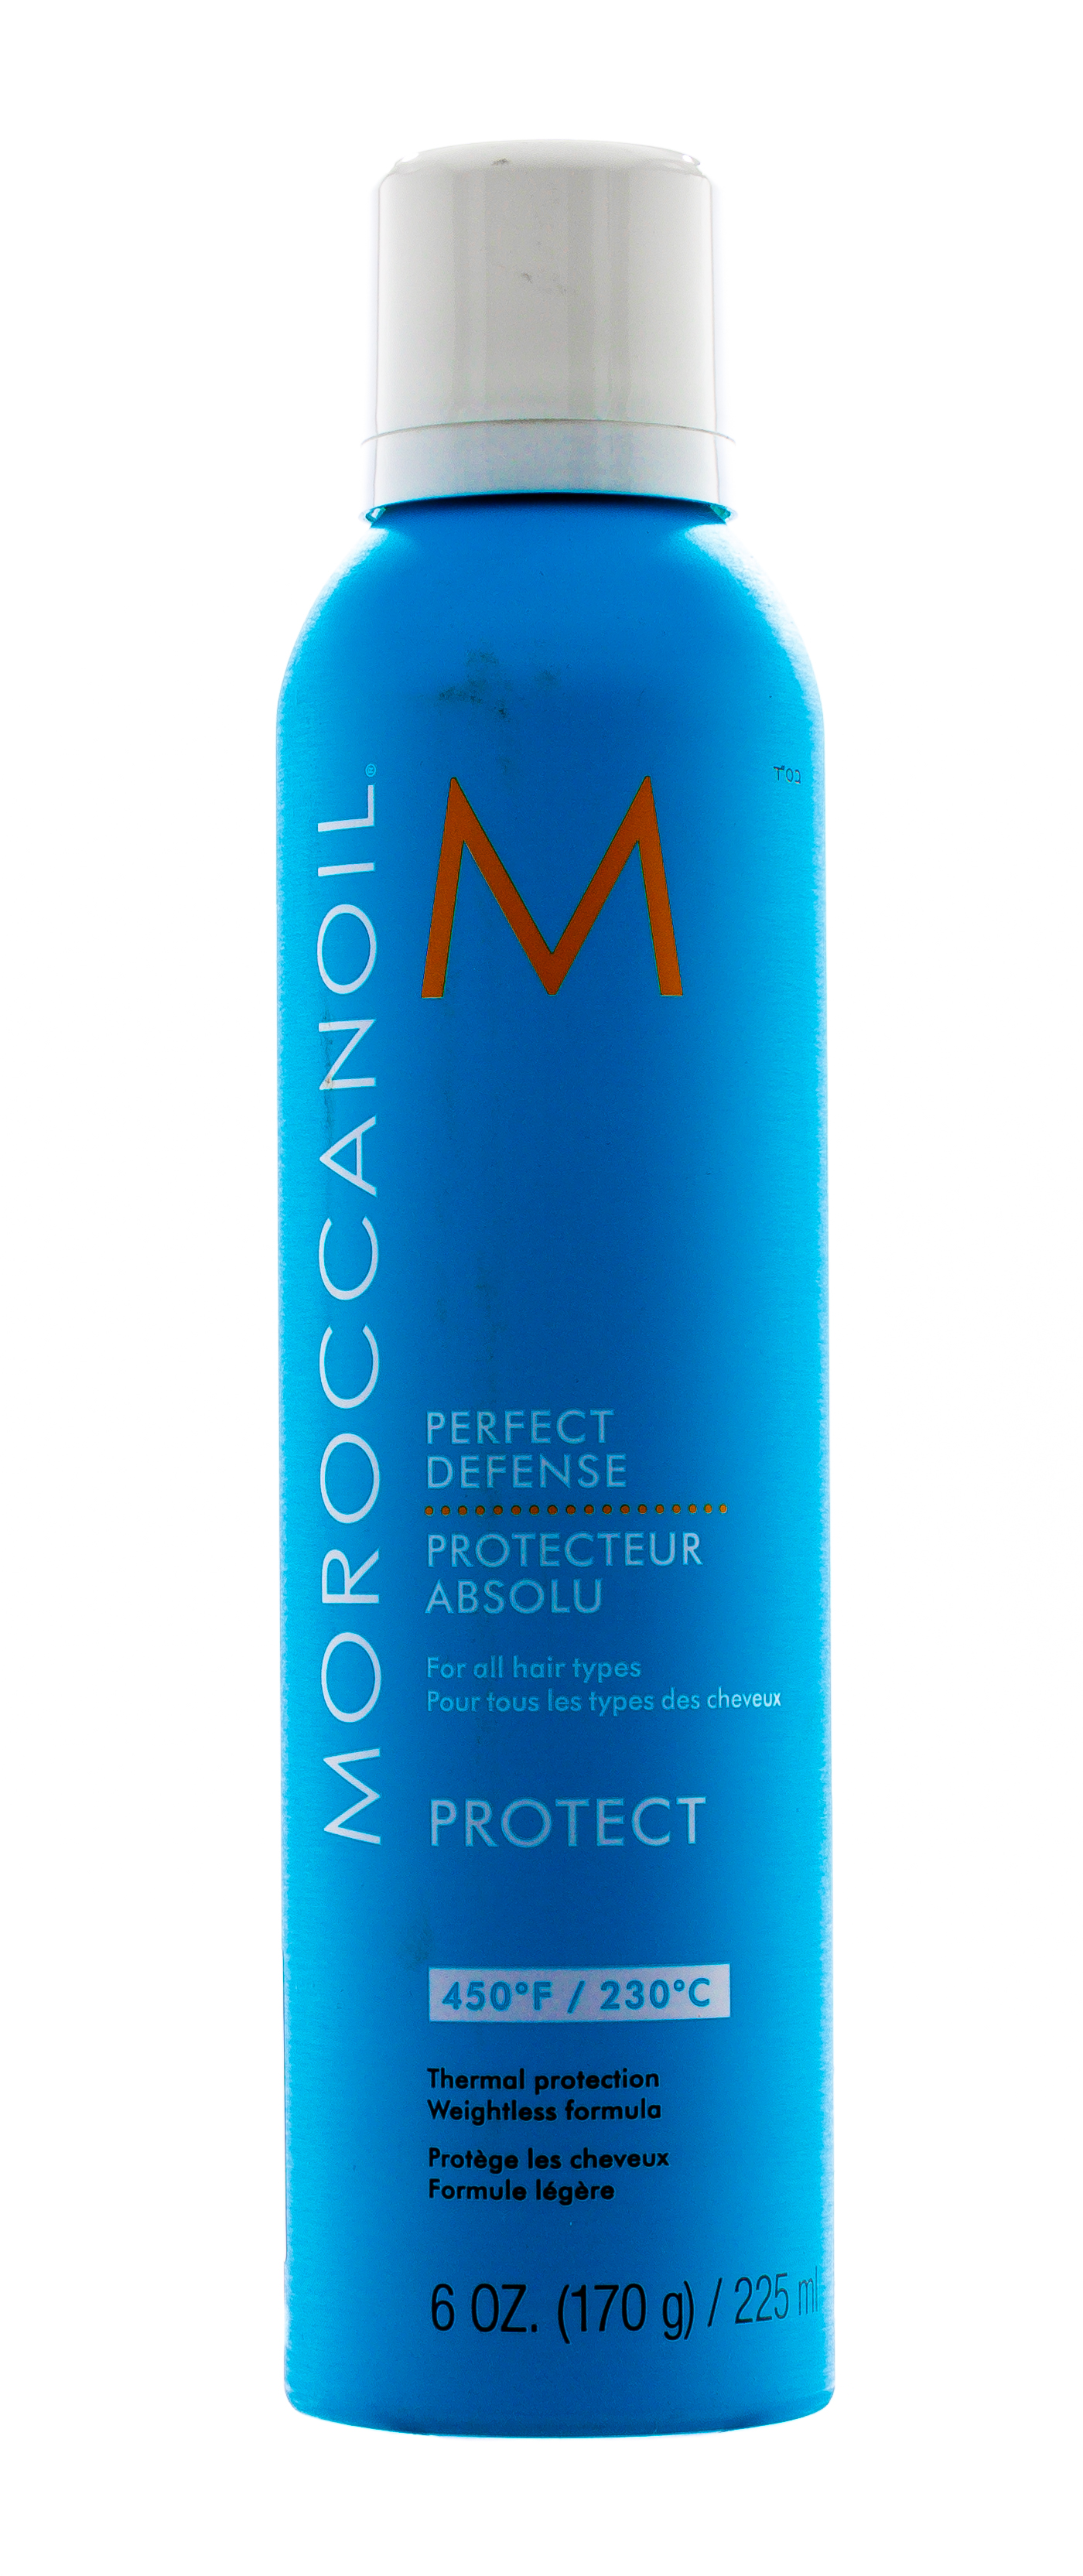 Moroccanoil Лосьон-спрей для волос Идеальная защита, 225 мл (Moroccanoil, Styling & Finishing) спрей идеальная защита moroccanoil spray pefrect defense 225 мл